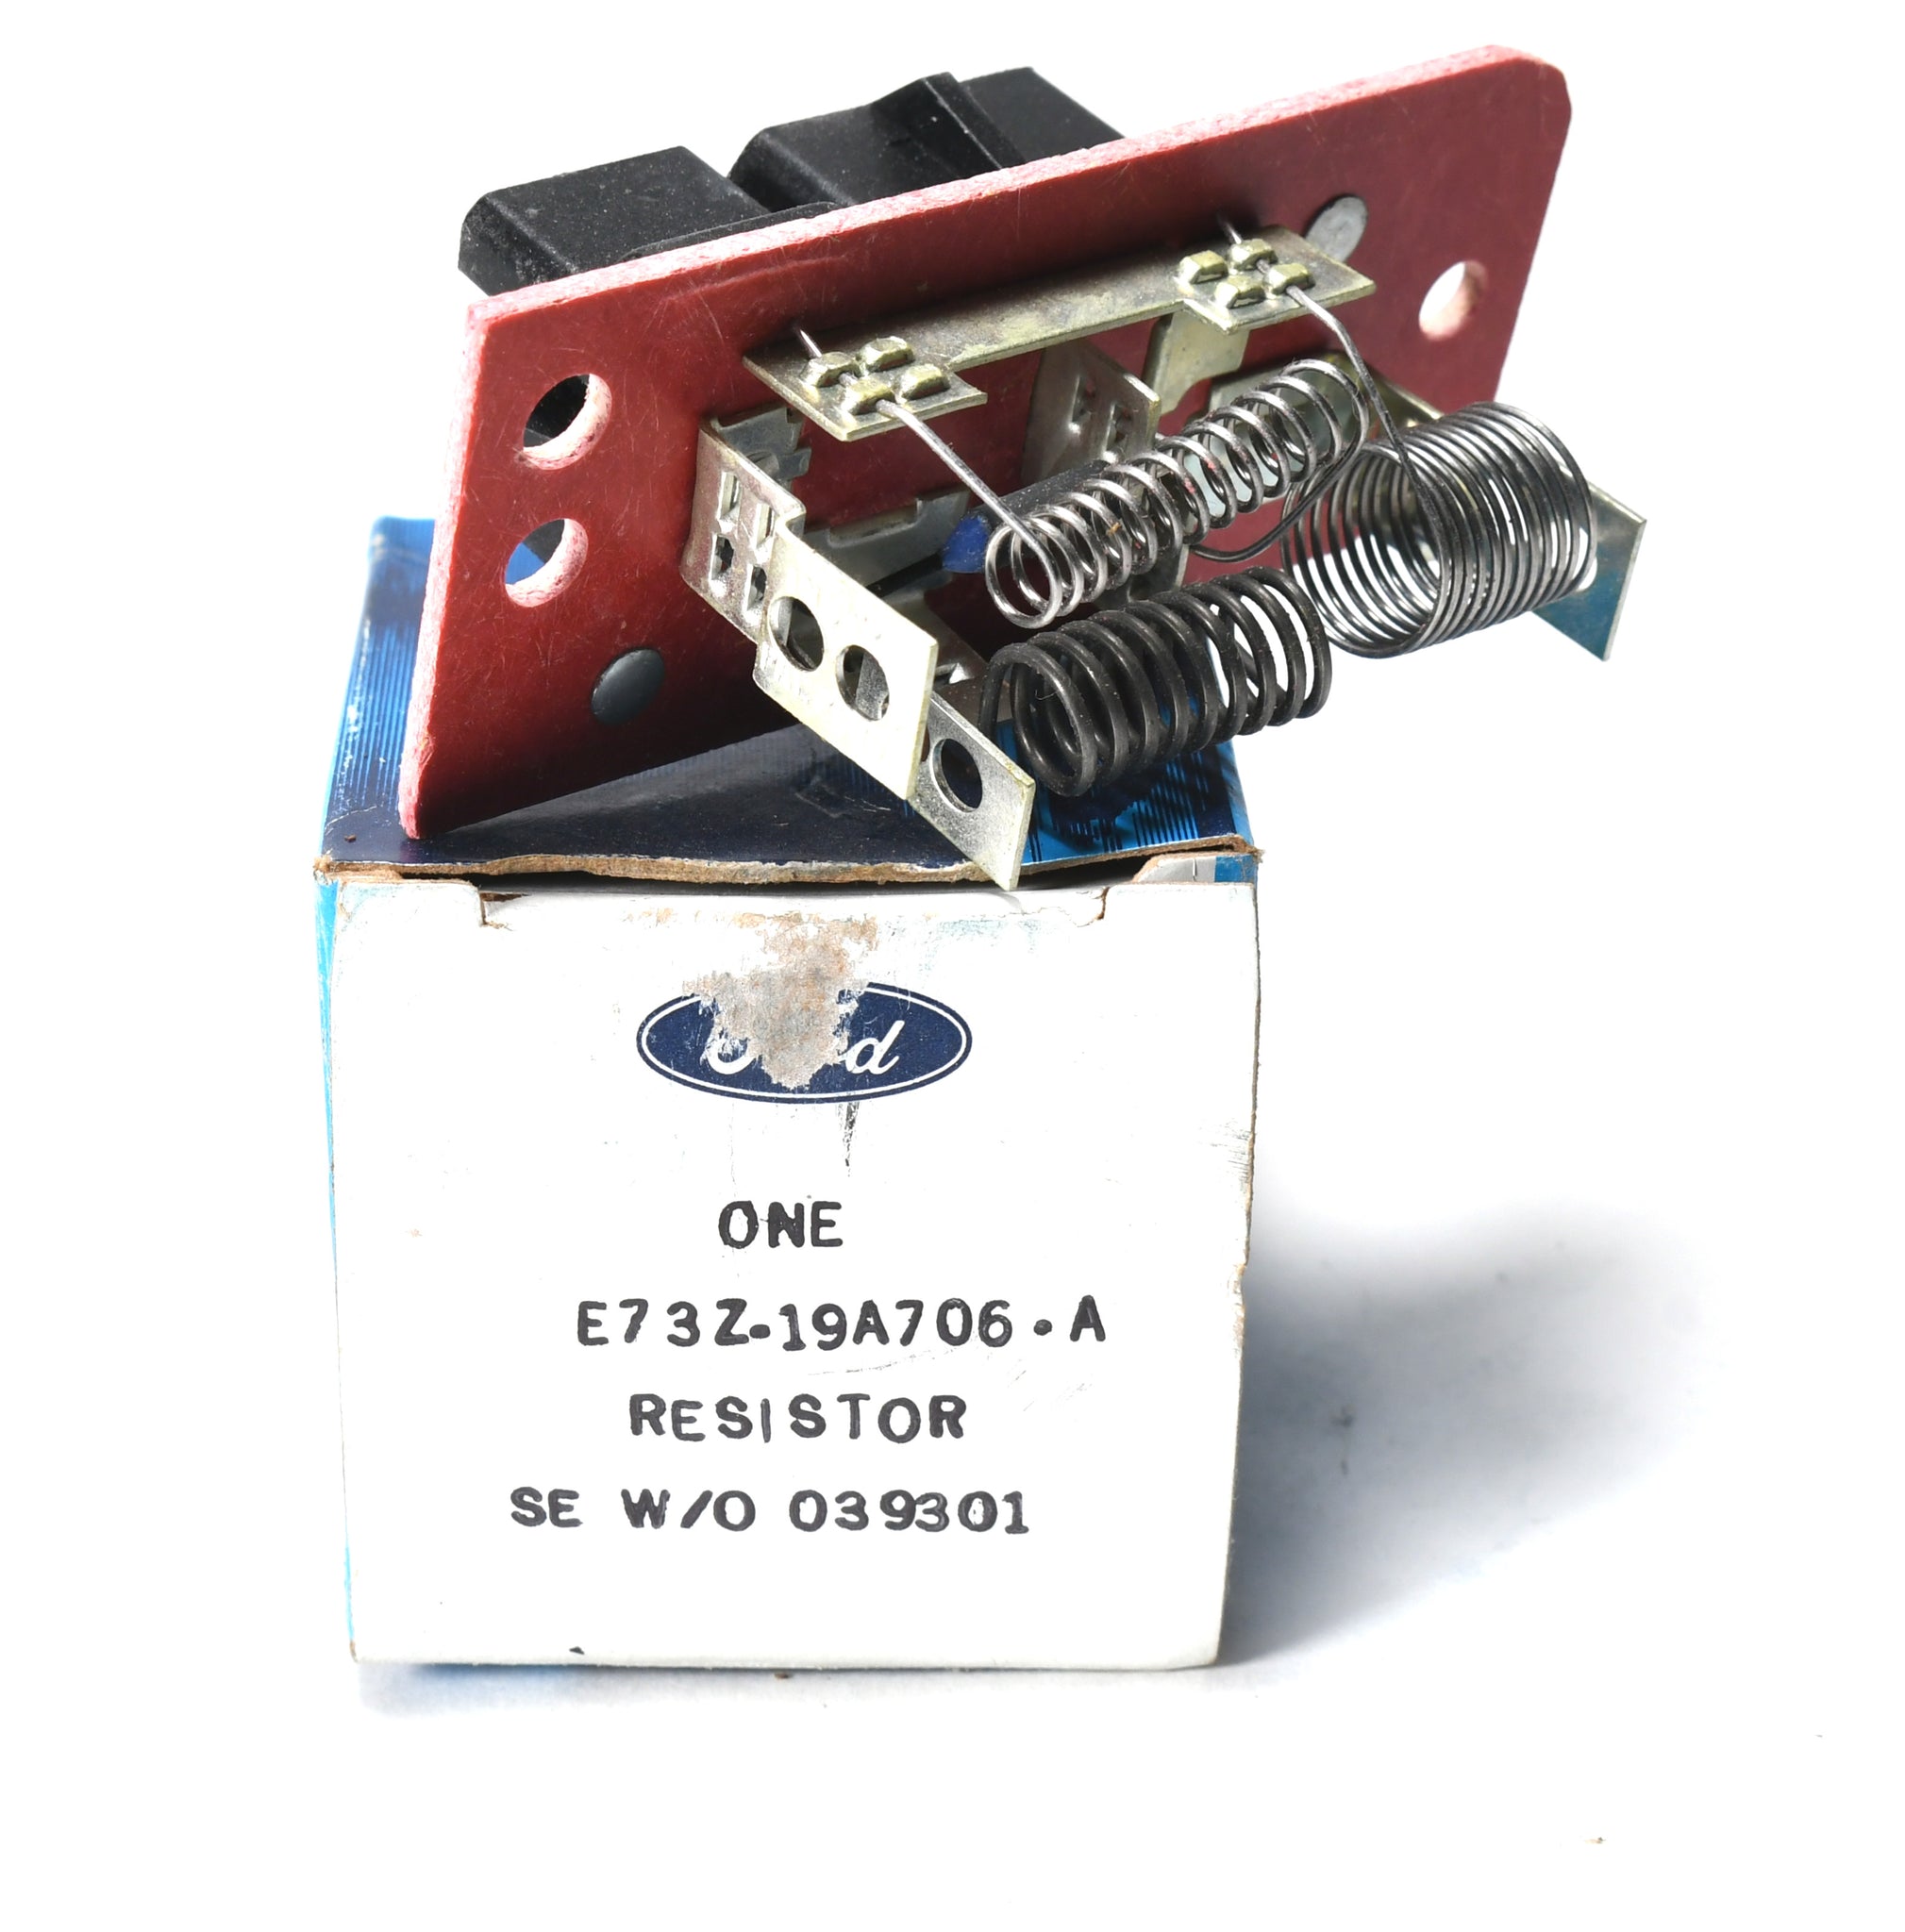 NEW NOS blower motor resistor Tempo Topaz Escort EXP Lynx E73Z-19A706-A